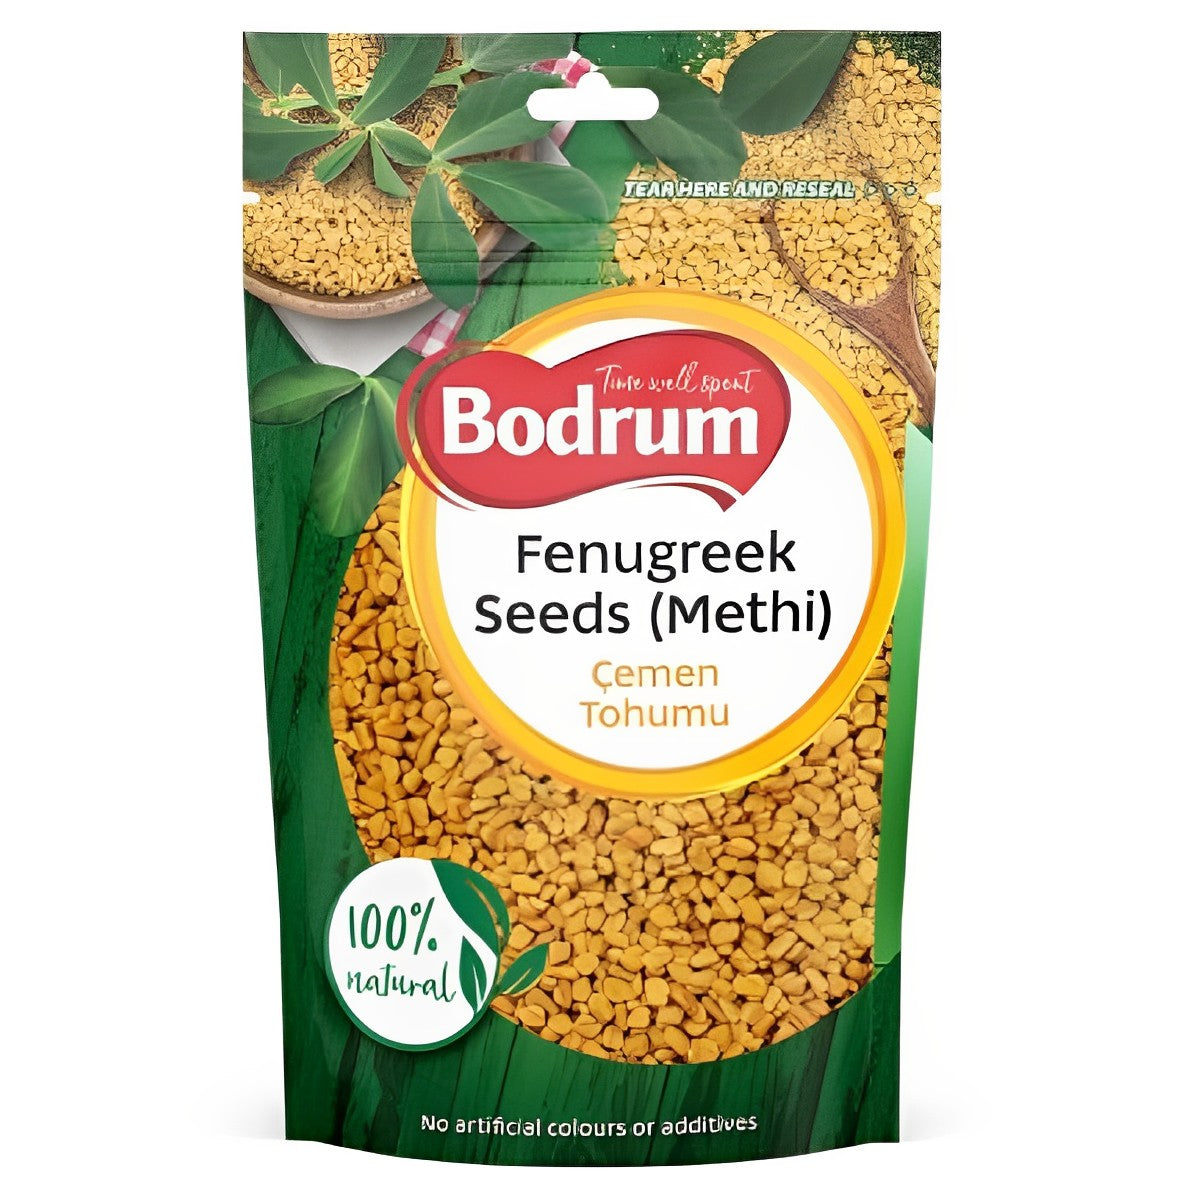 Bodrum - Fenugreek Seeds (Methi) - 100g - Continental Food Store